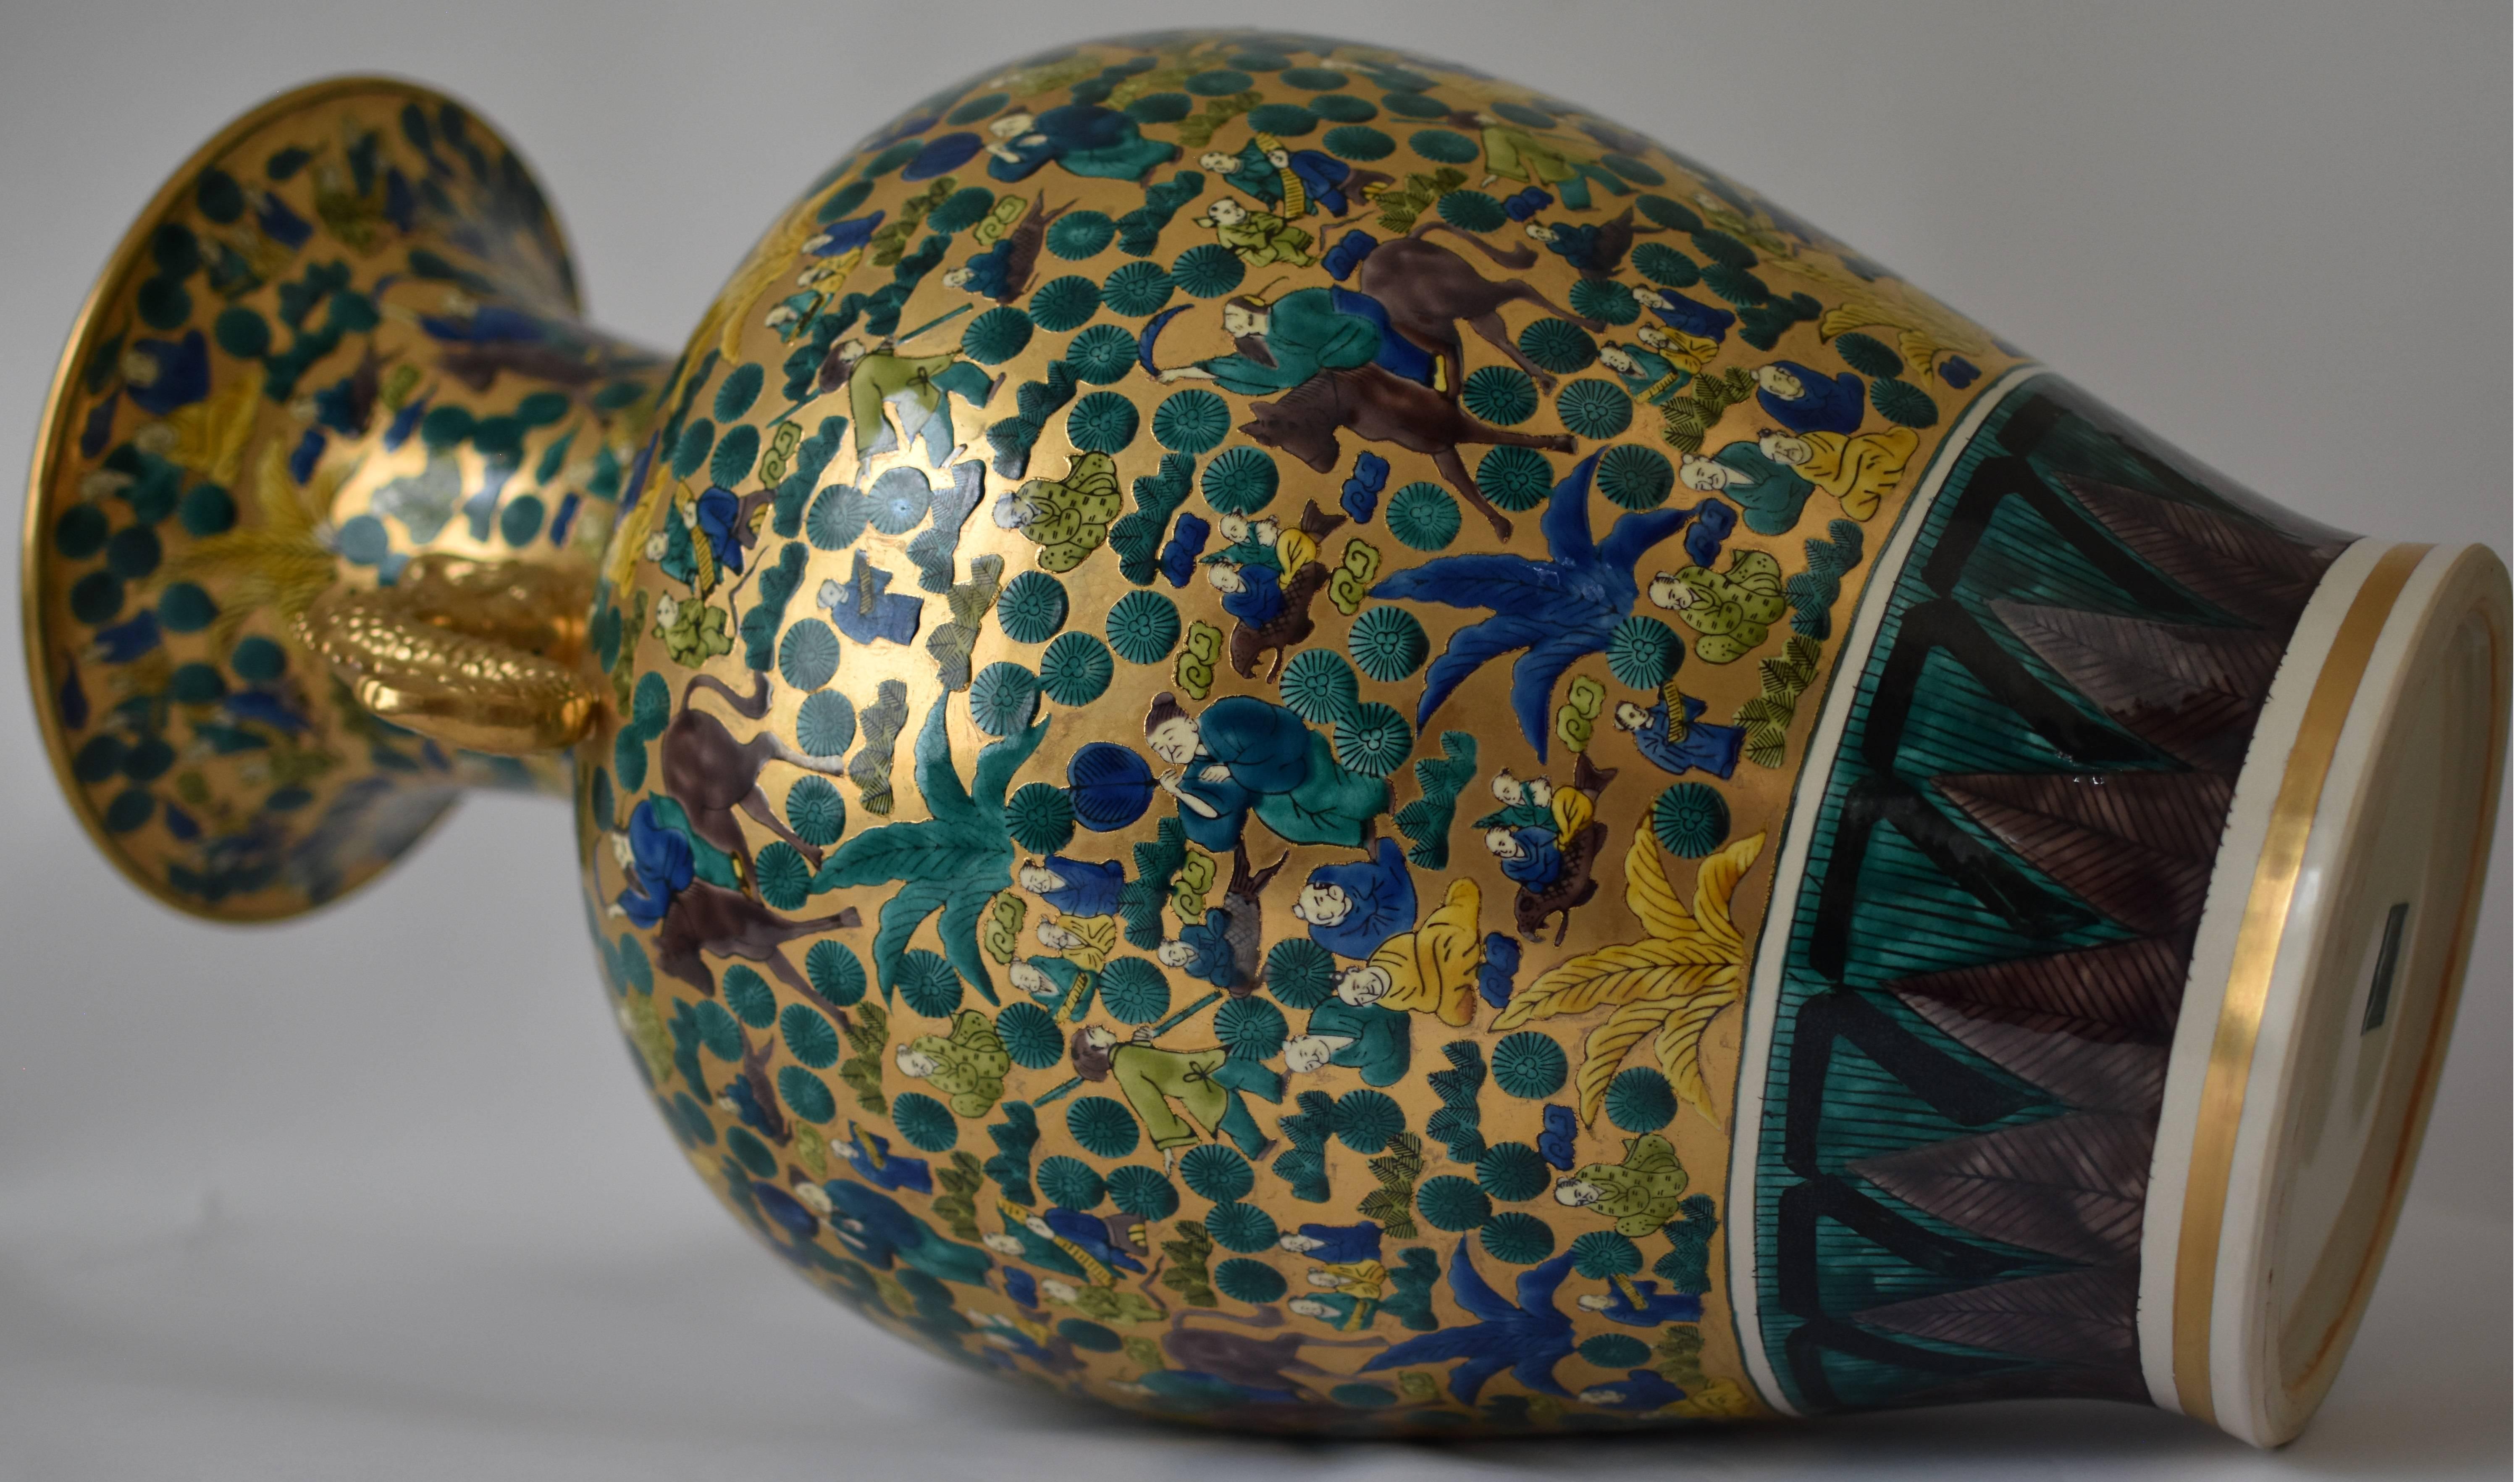 Peint à la main Vase contemporain japonais en porcelaine verte, bleue et dorée, réalisé par un maître artiste, 2 en vente